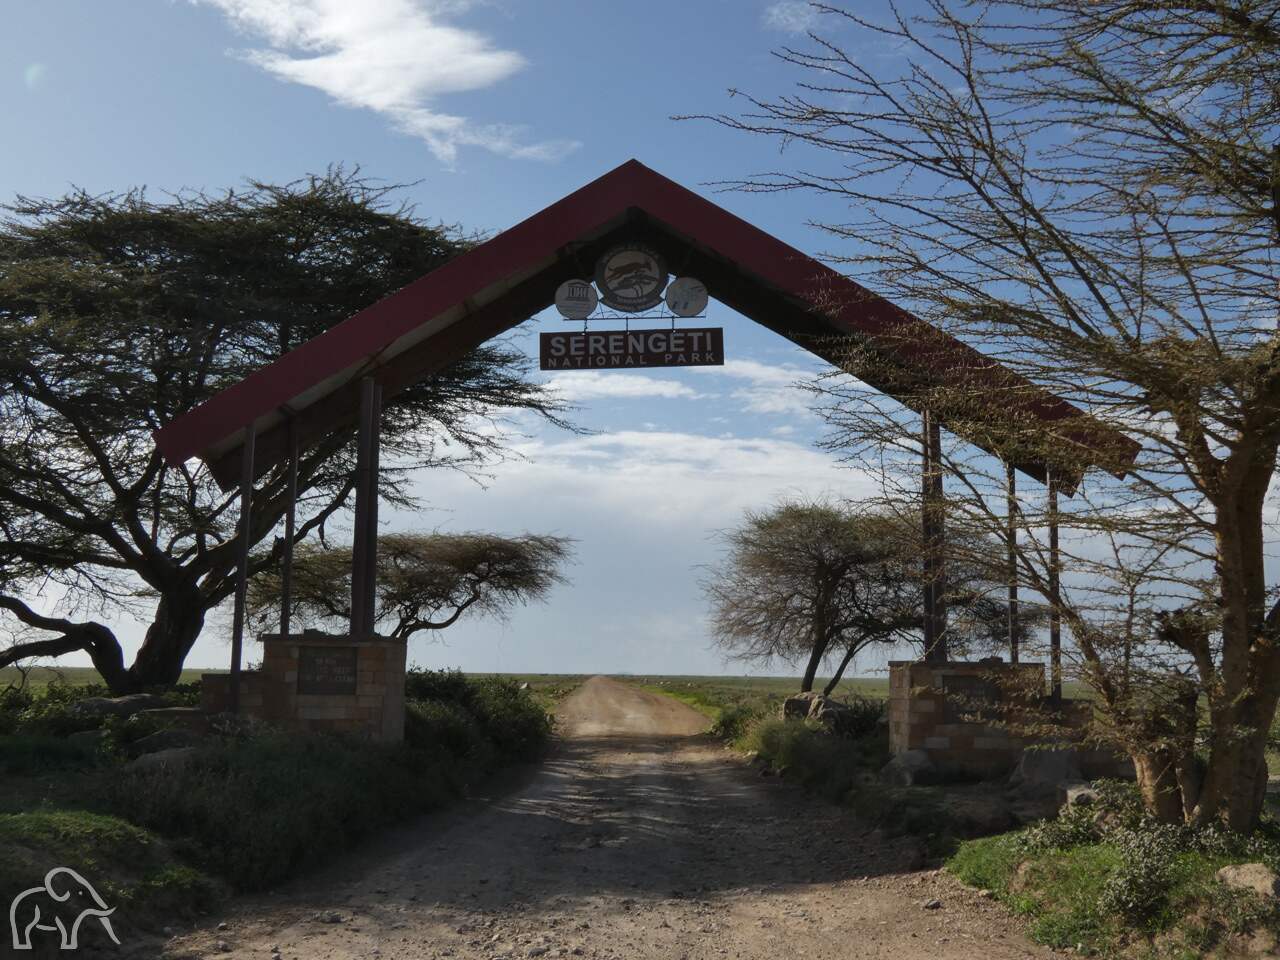 driehoekige toeganspoort naar de serengeti. In het midden het naambord van de serengeti national park